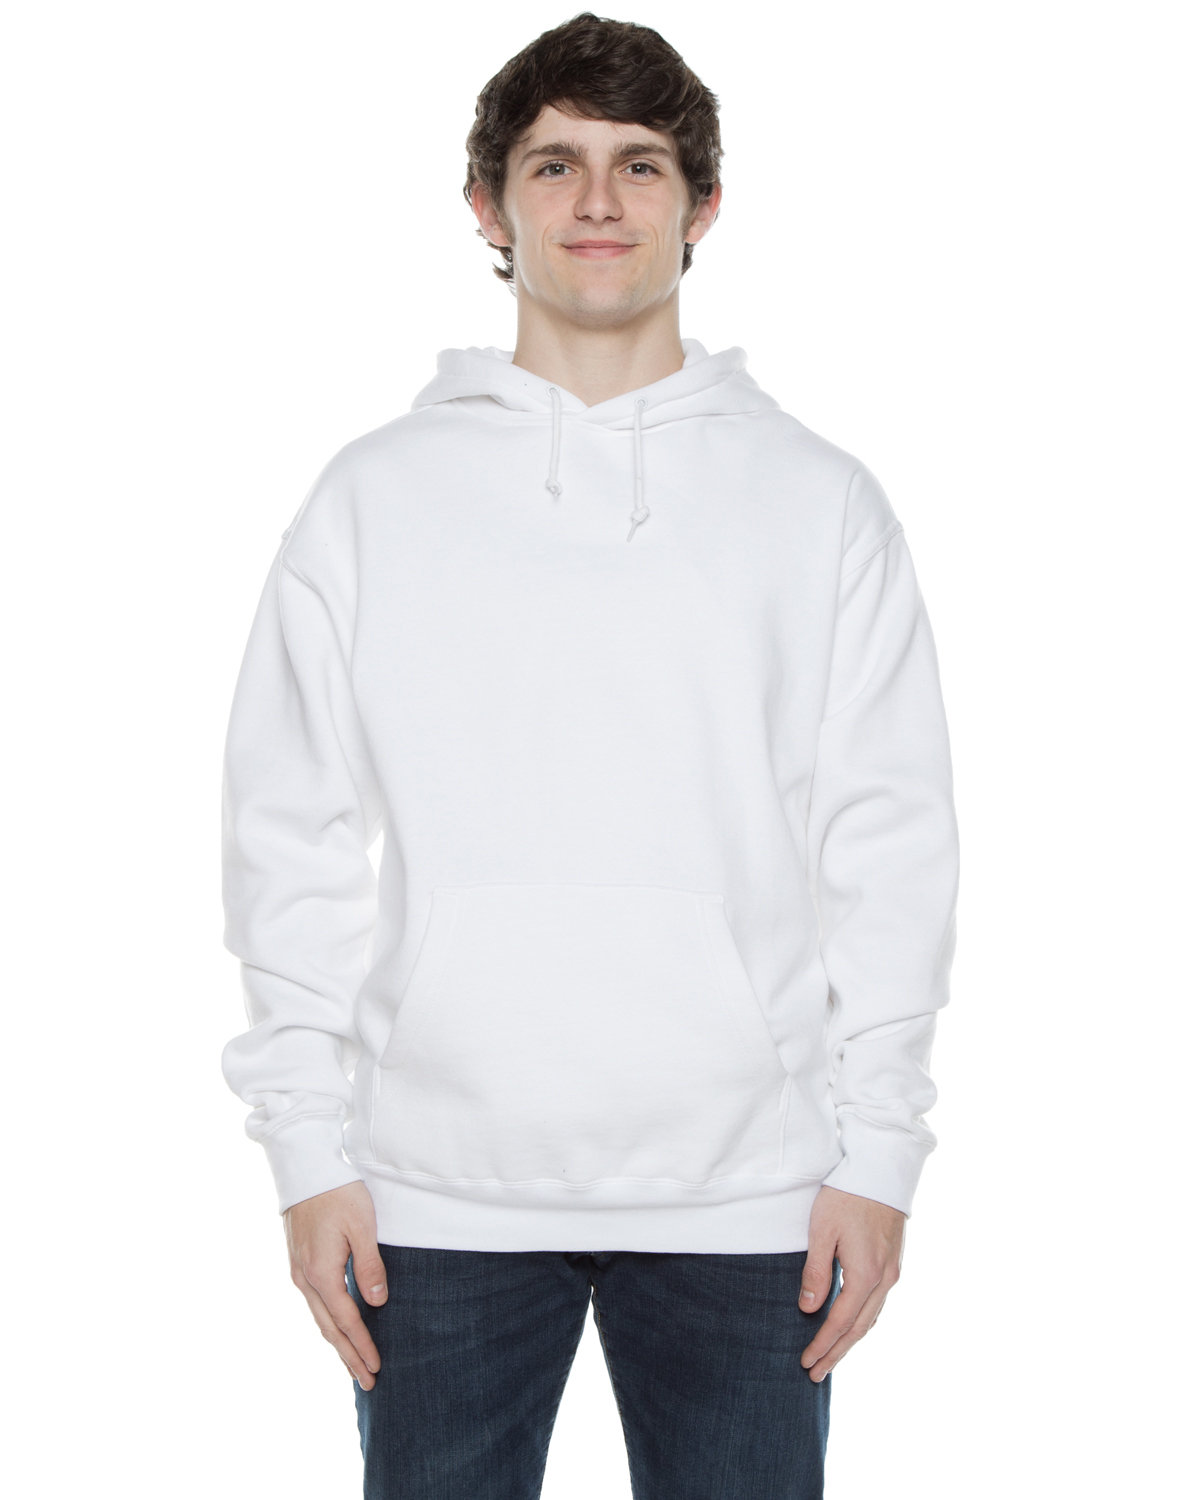 Unisex Exclusive Hooded Sweatshirt-Beimar